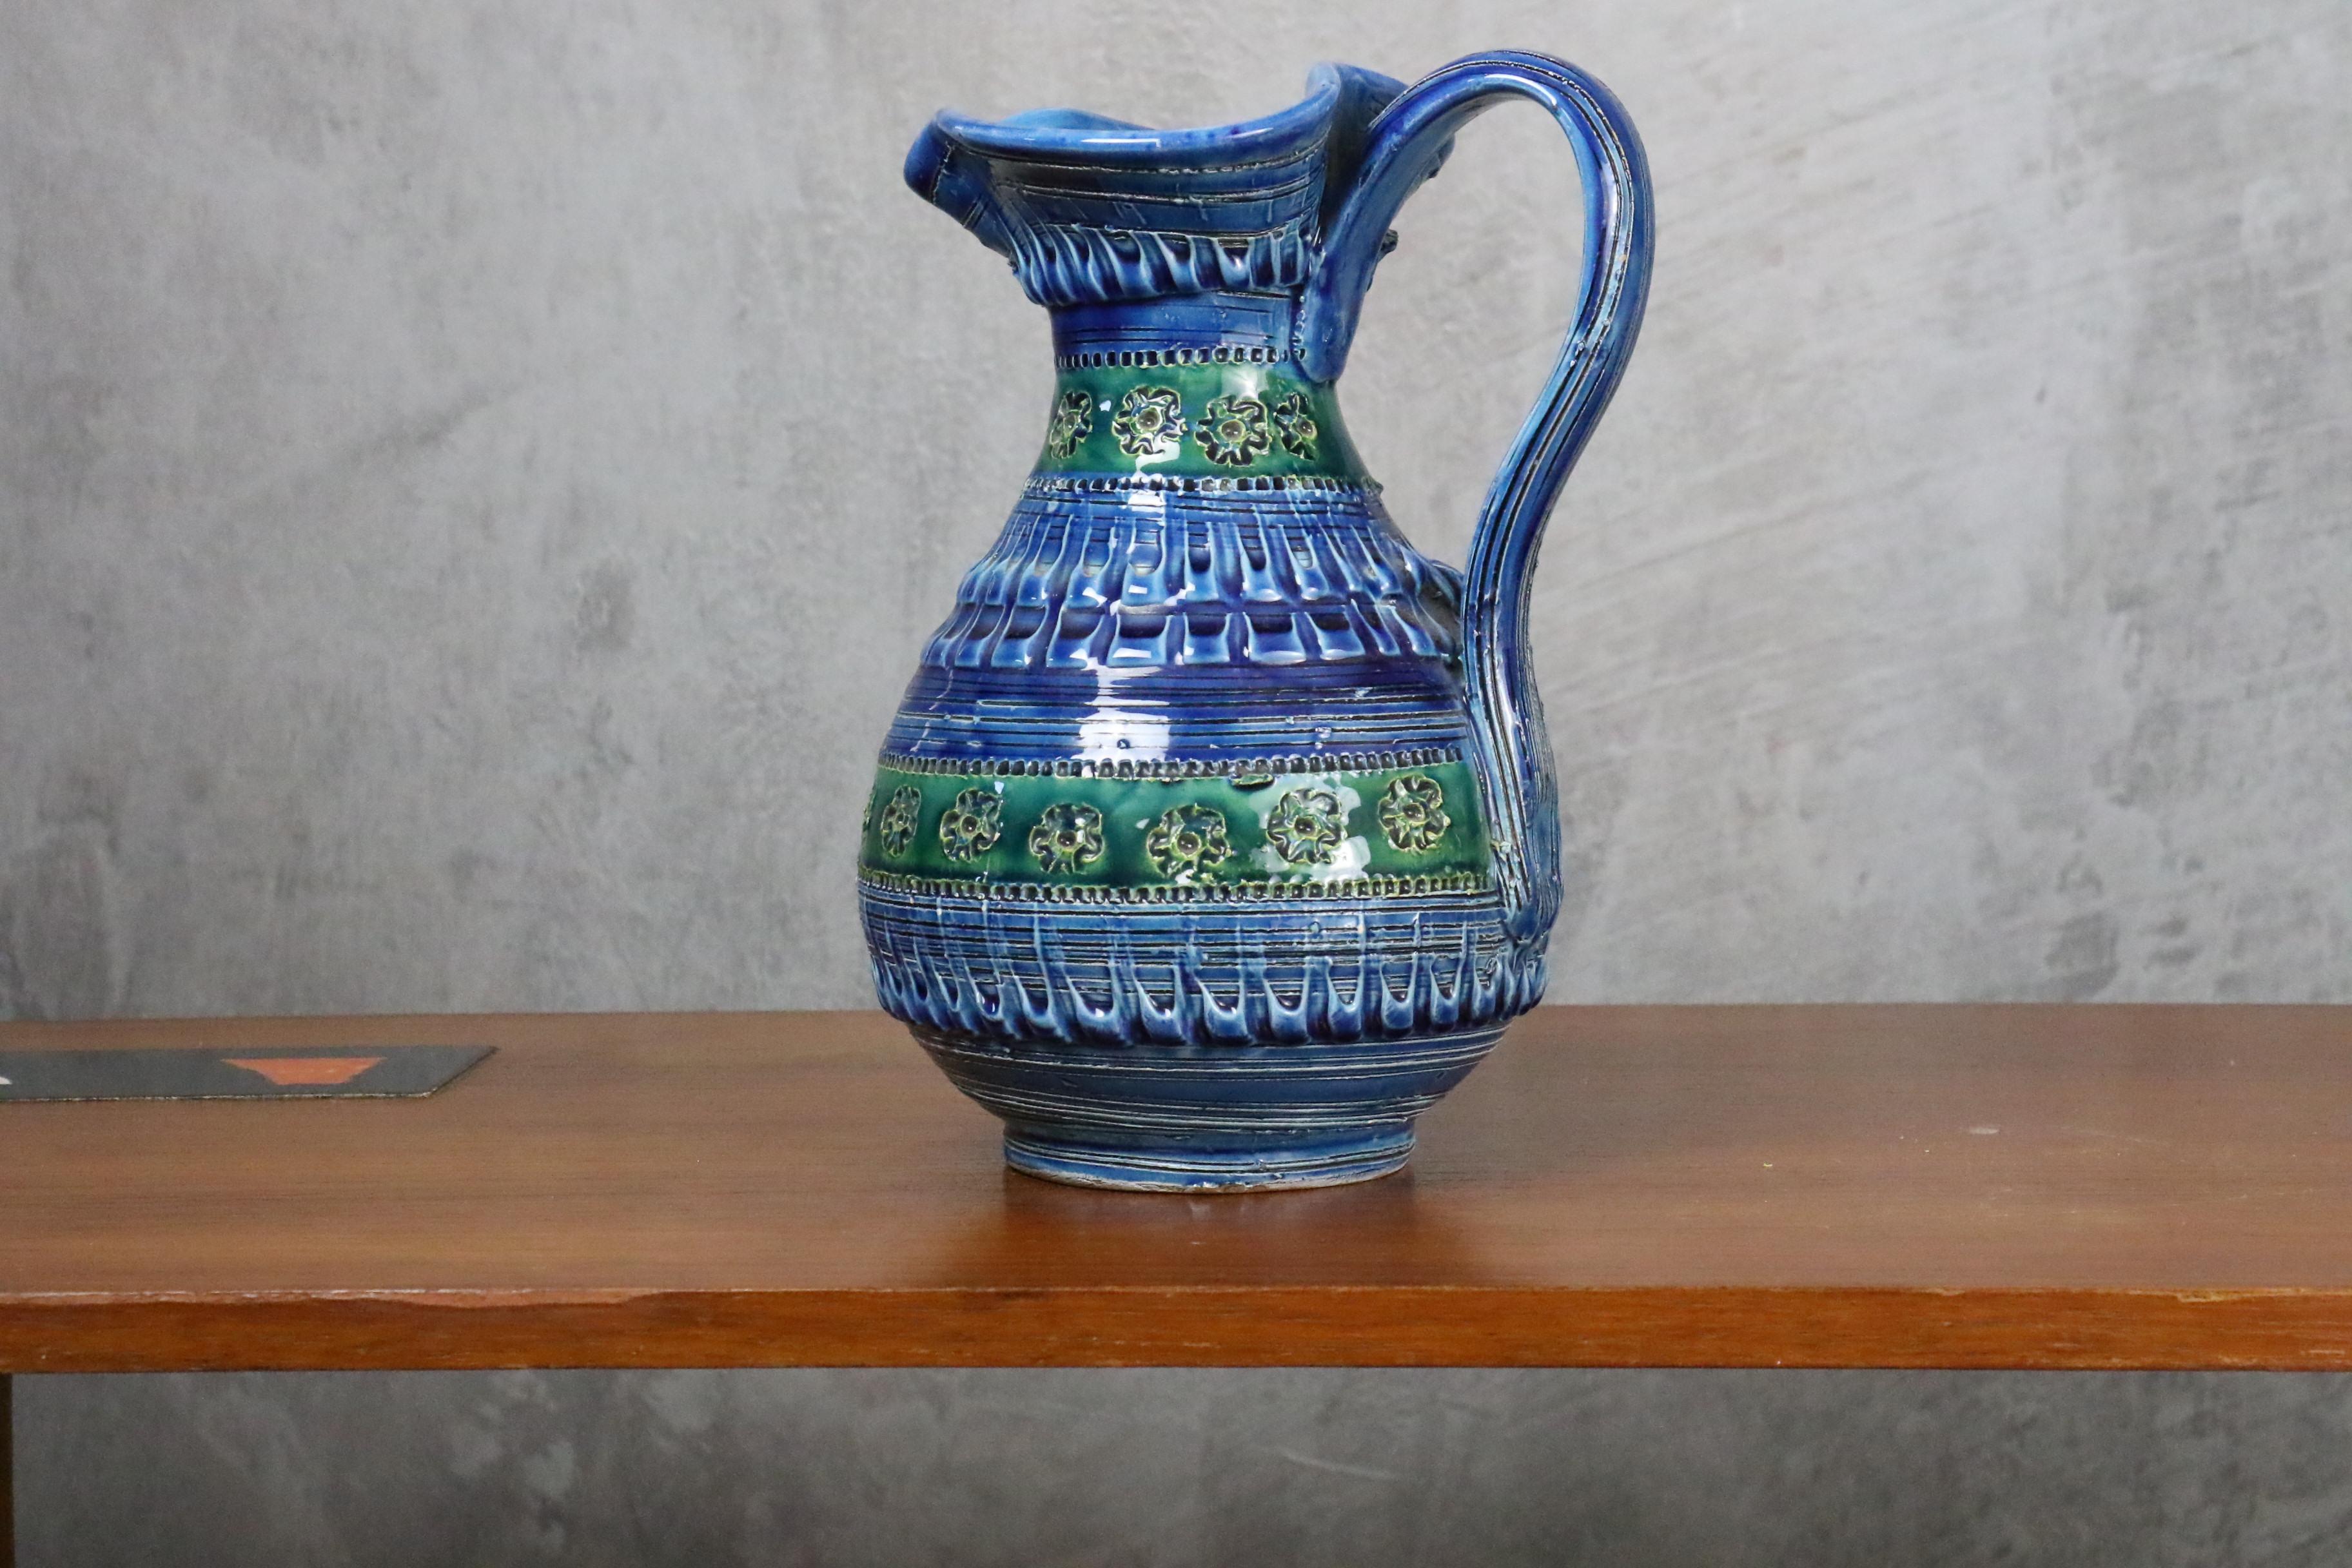 Aldo Londi Terrakotta-Keramik Rimini Blue Vase oder Krug für Bitossi, Italien. 

Diese prächtige Vase wurde in den 1960er Jahren von Aldo Londi in Italien entworfen.

Blaue, grüne und türkisfarbene Terrakotta-Keramik wird von Hand glasiert und mit